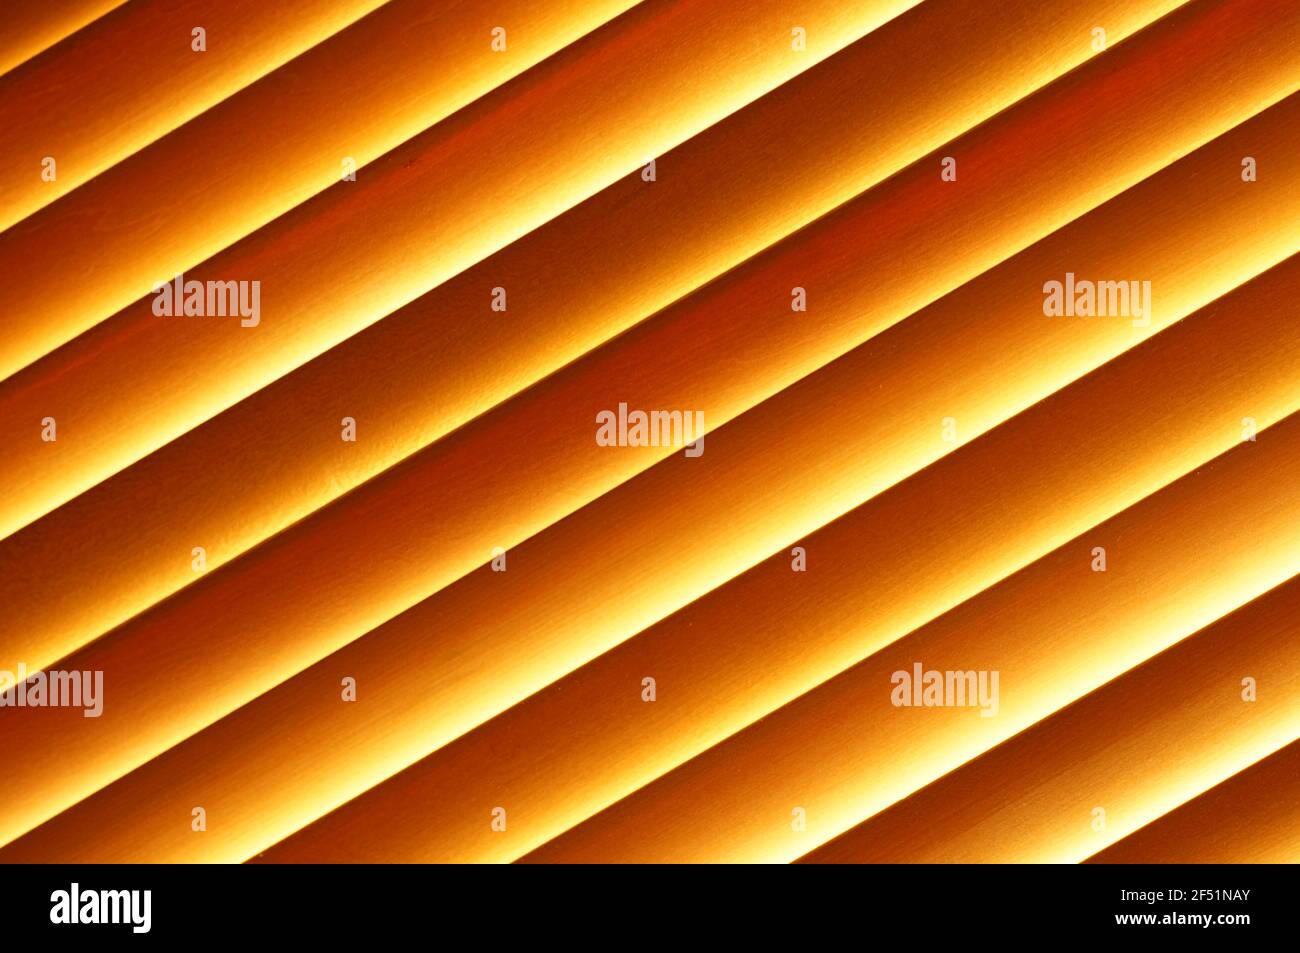 Holzjalousien im Fenster - schräge Aussicht. Fenstervorhänge aus Naturholz. Schräge orangefarbene Linien. Jalousien in Nahaufnahme. Stockfoto